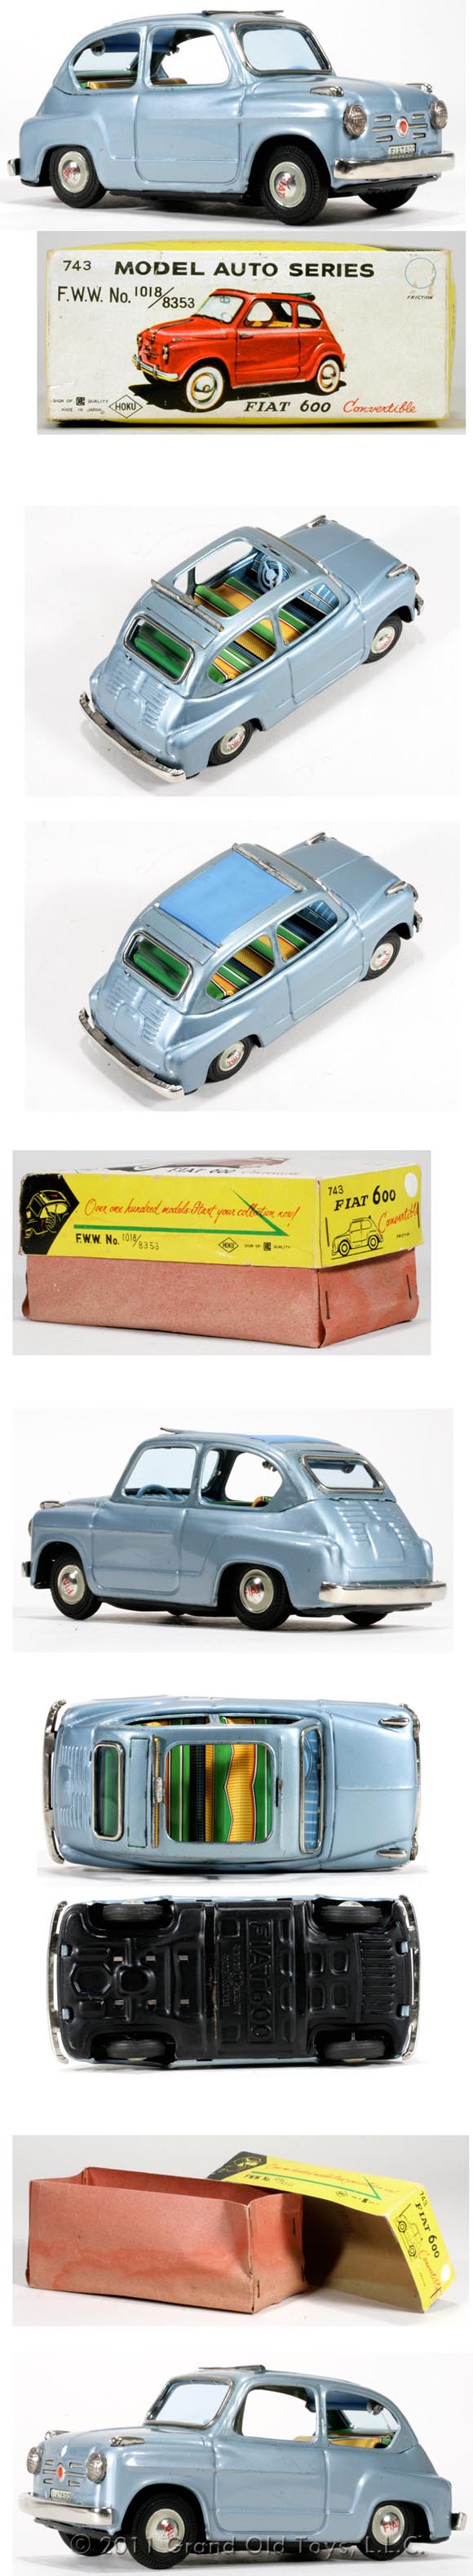 1956 Bandai Fiat 600 Convertible In Original Box